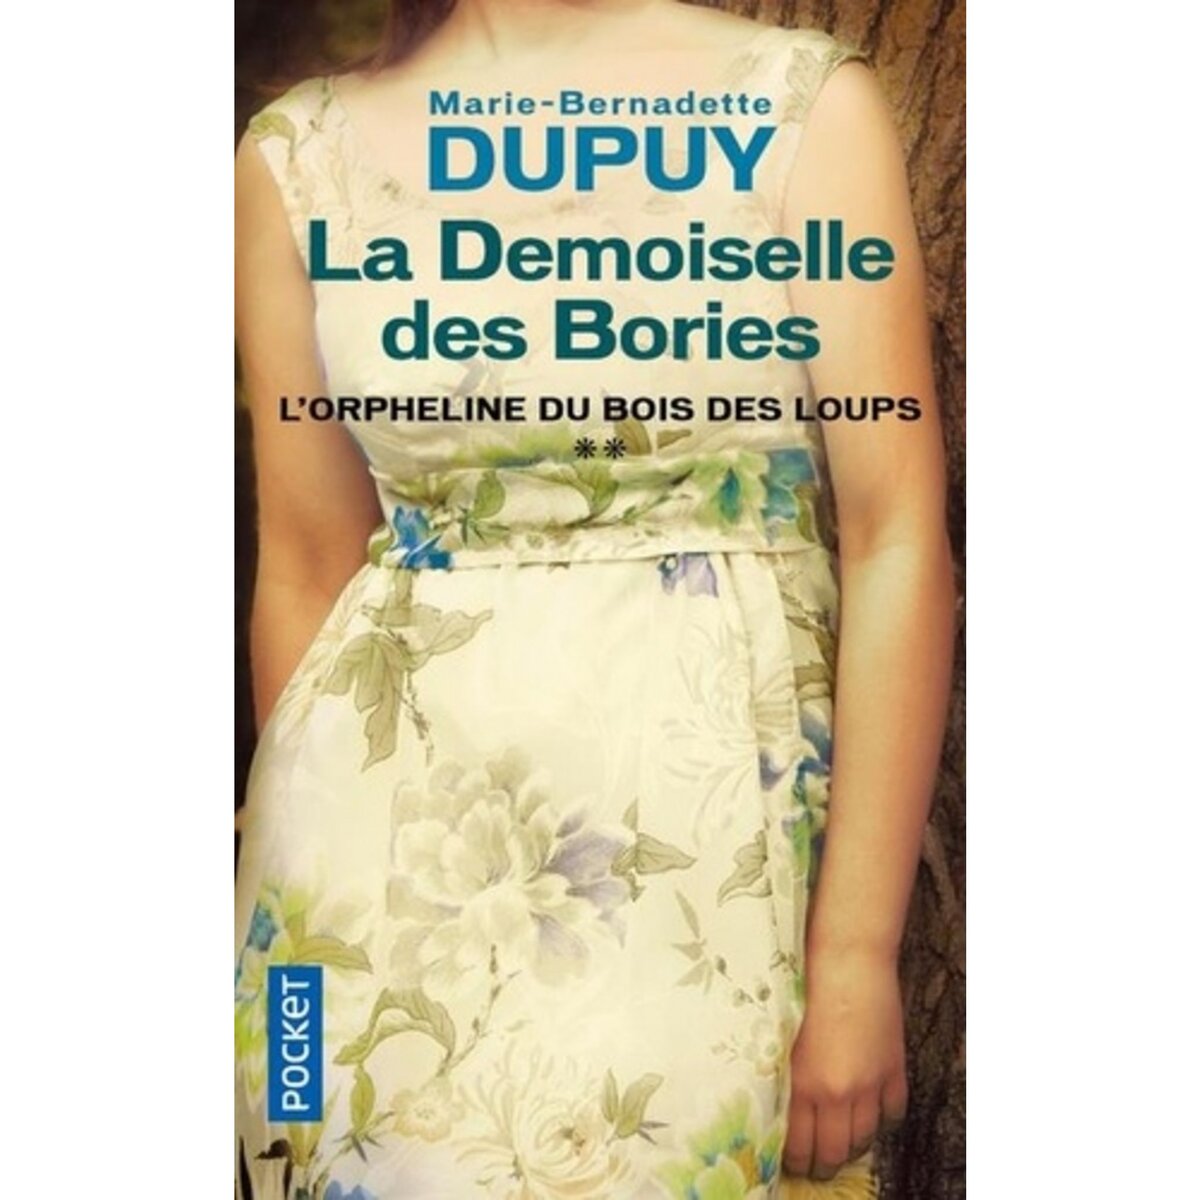  LA DEMOISELLE DES BORIES, Dupuy Marie-Bernadette